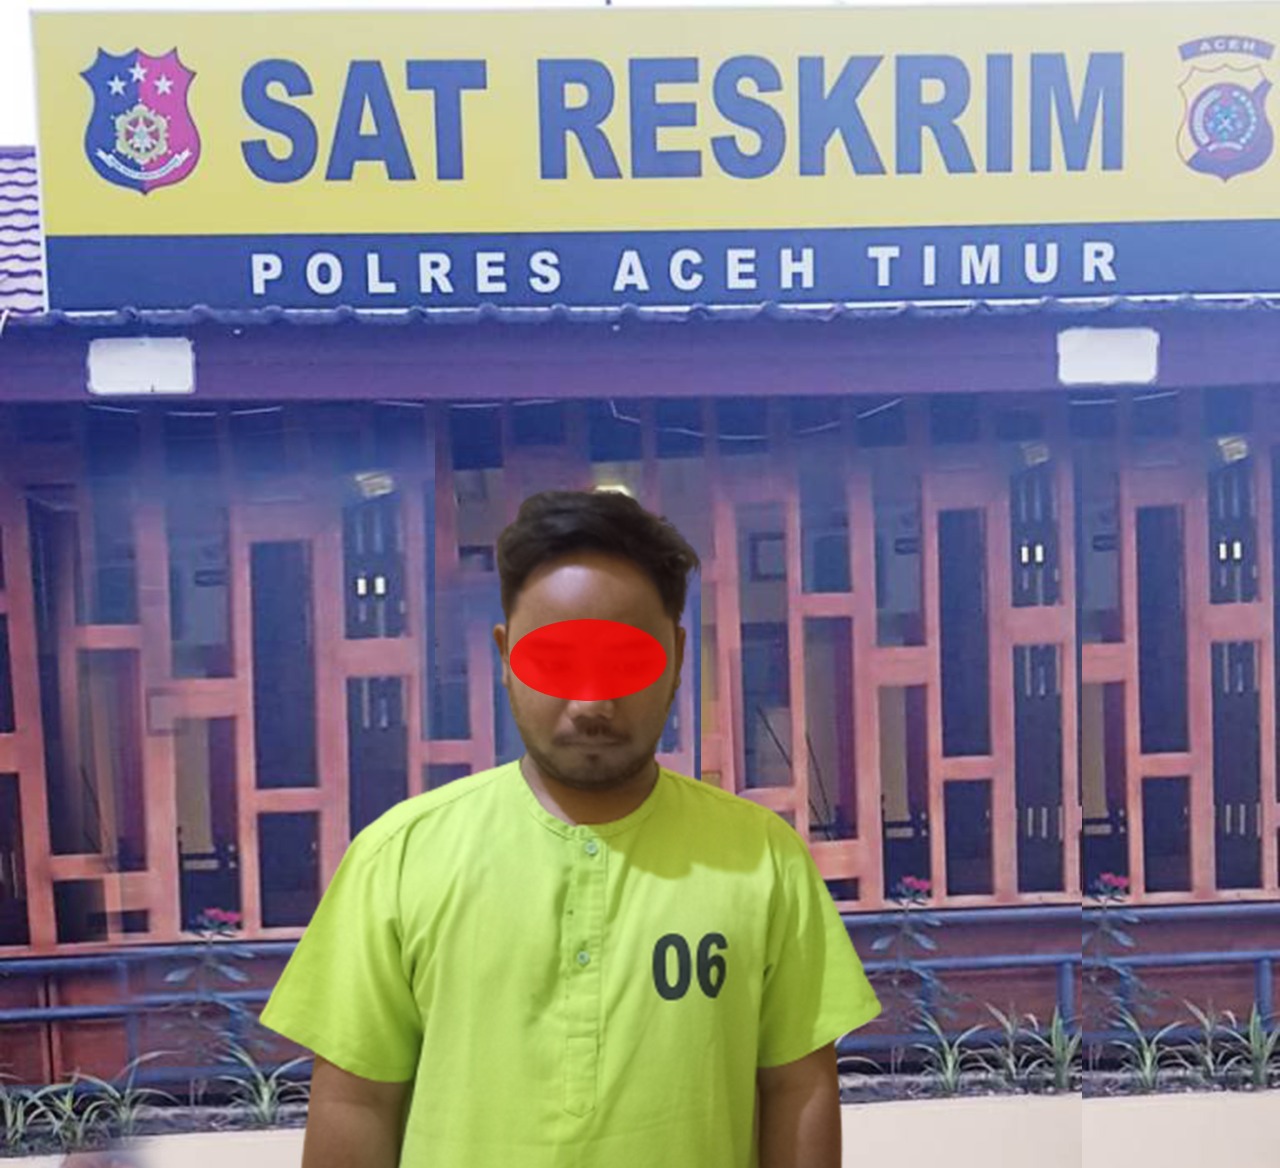 SF (27) yang berprofesi sebagai guru gaji di Aceh Timur ditangkap polisi karena diduga memperkosa santriwati berulang kali. (Foto: Dok. Polres Aceh Timur)